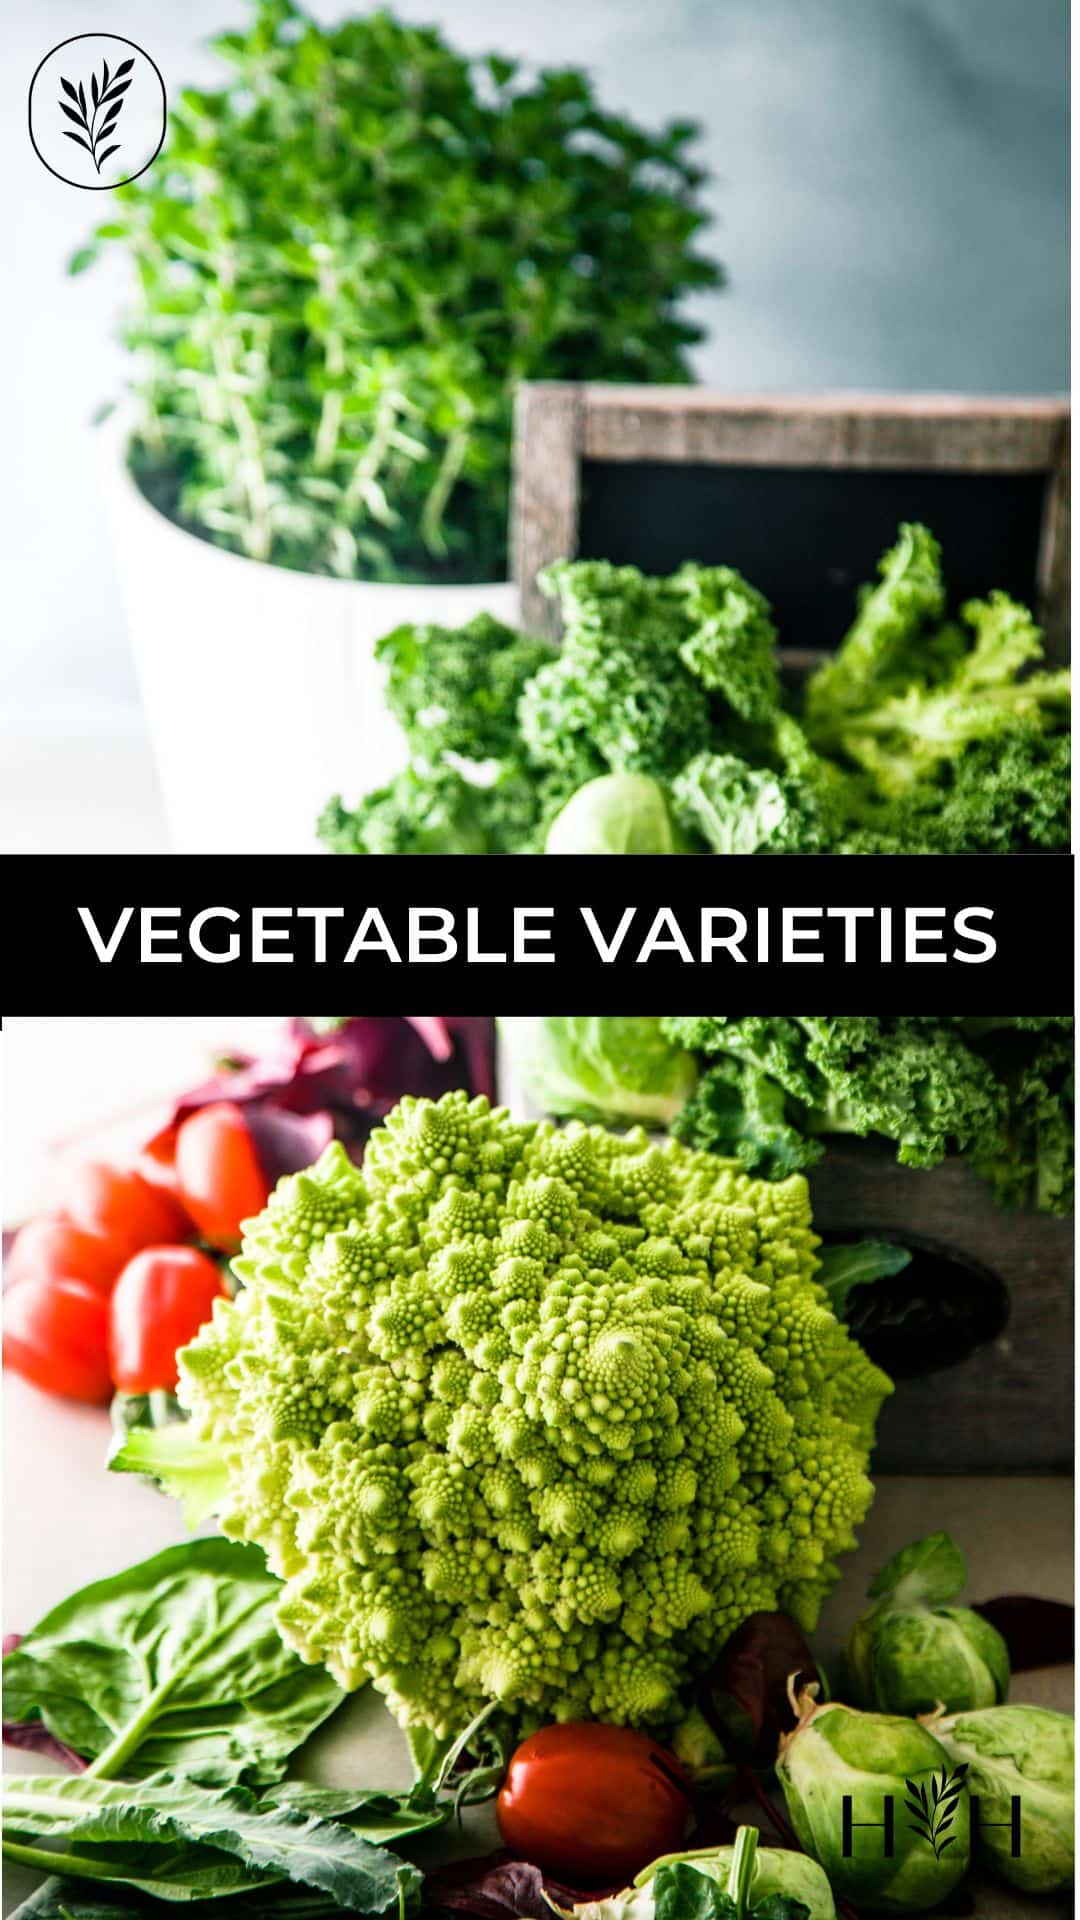 Vegetable varieties via @home4theharvest